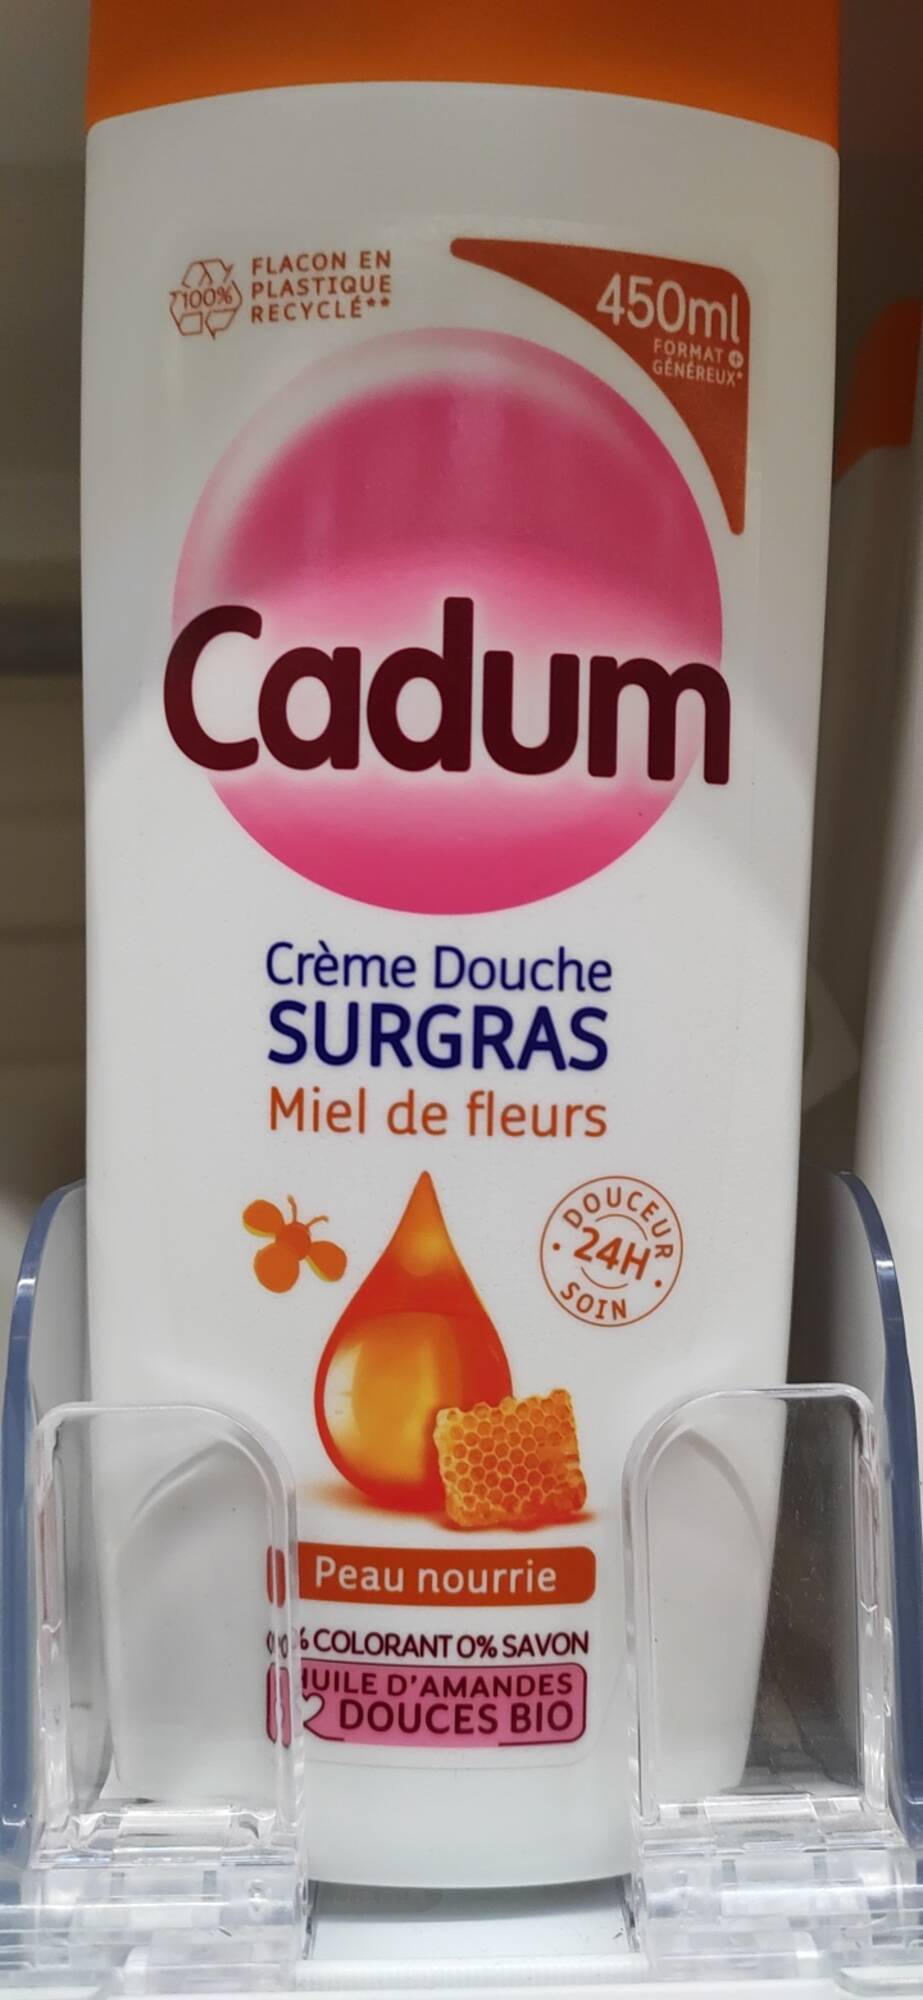 CADUM - Surgras - Crème douche